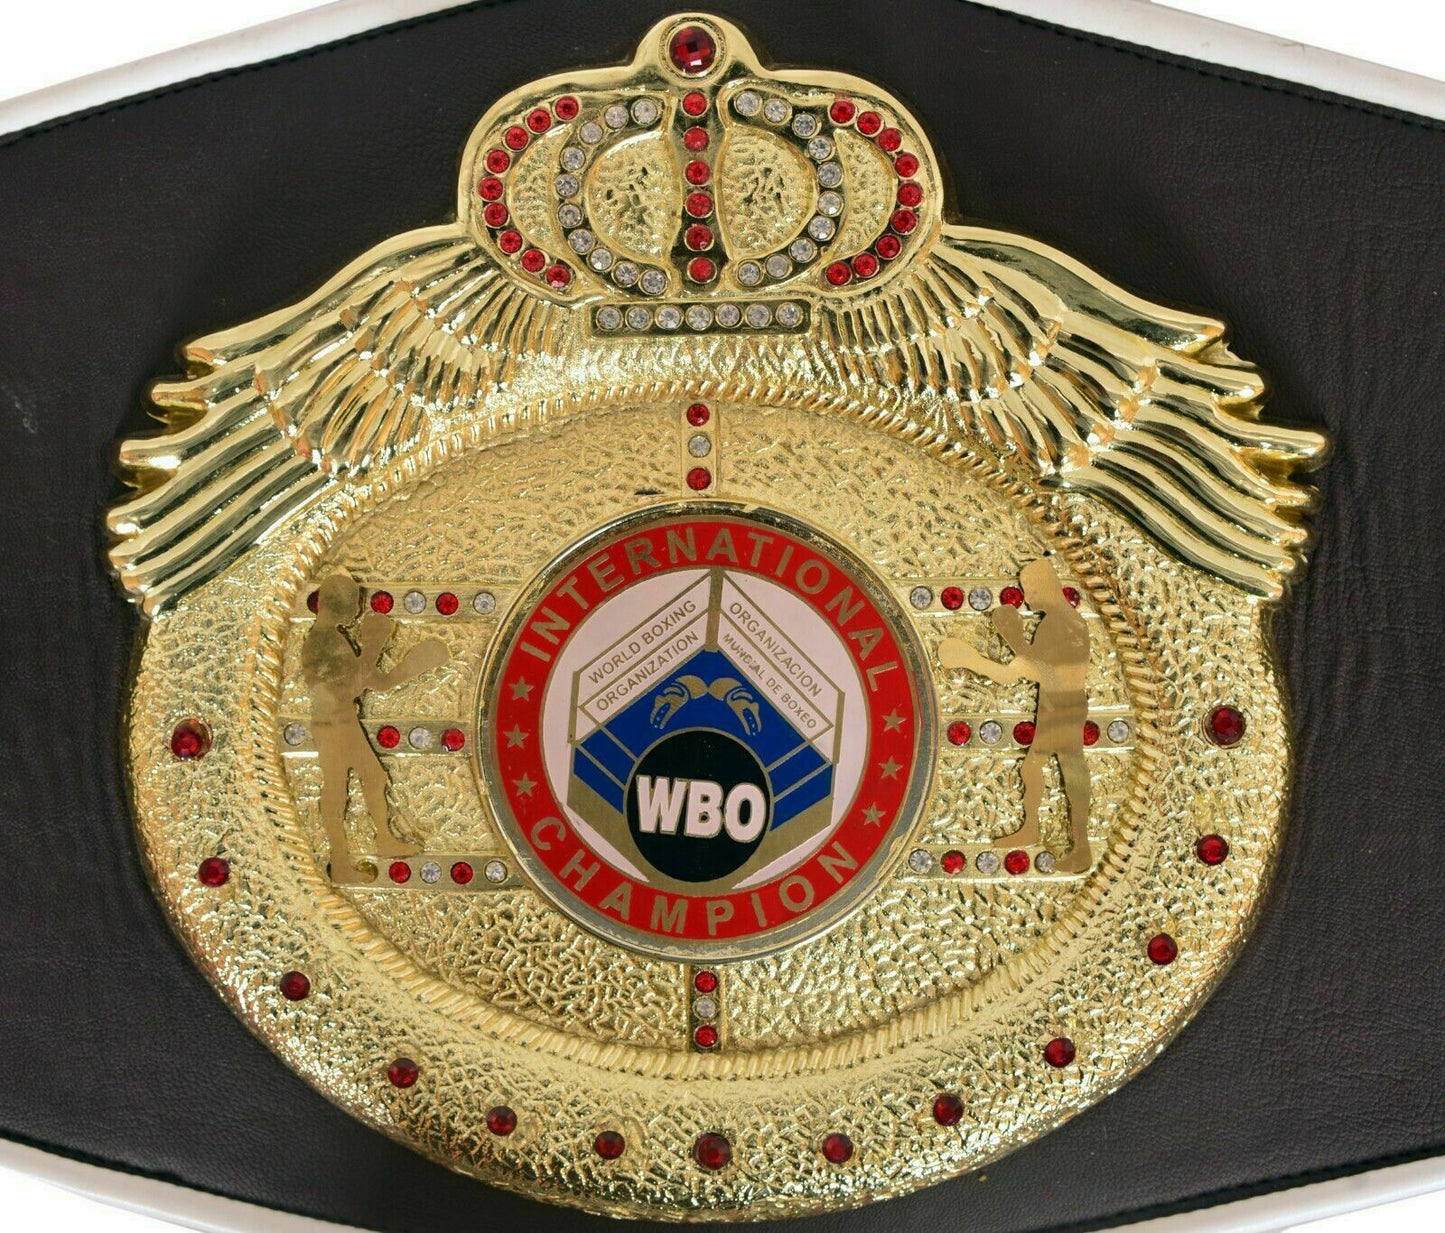 WBO INTERNATIONAL BOXING CHAMPIONSHIP TITLE BELT